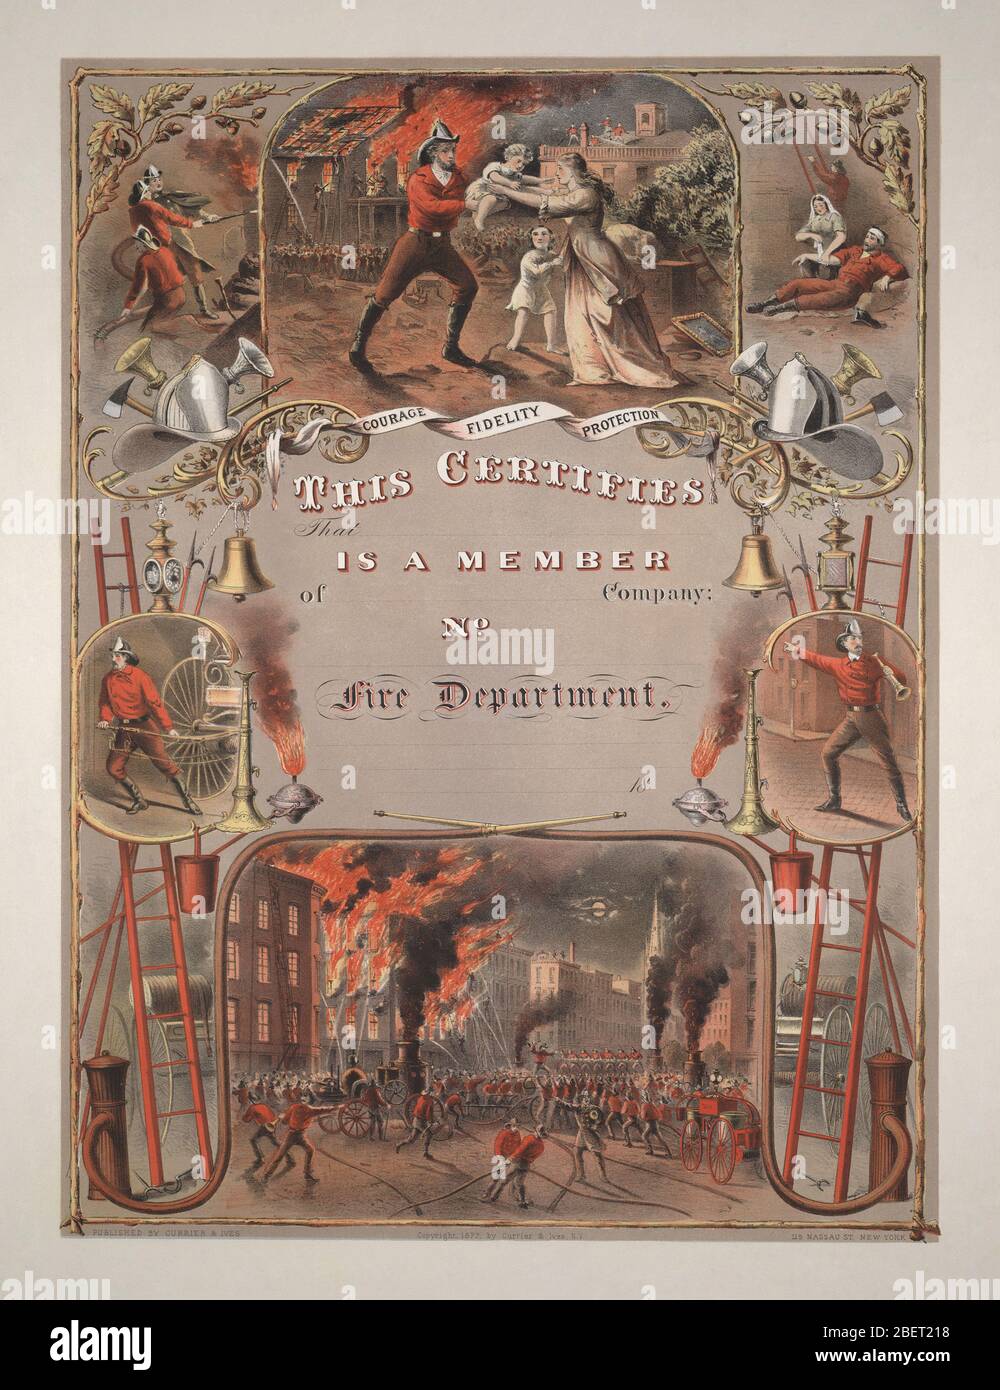 19th Century American Fire Department Print, veröffentlicht von Currier und Ives im Jahr 1877. Stockfoto